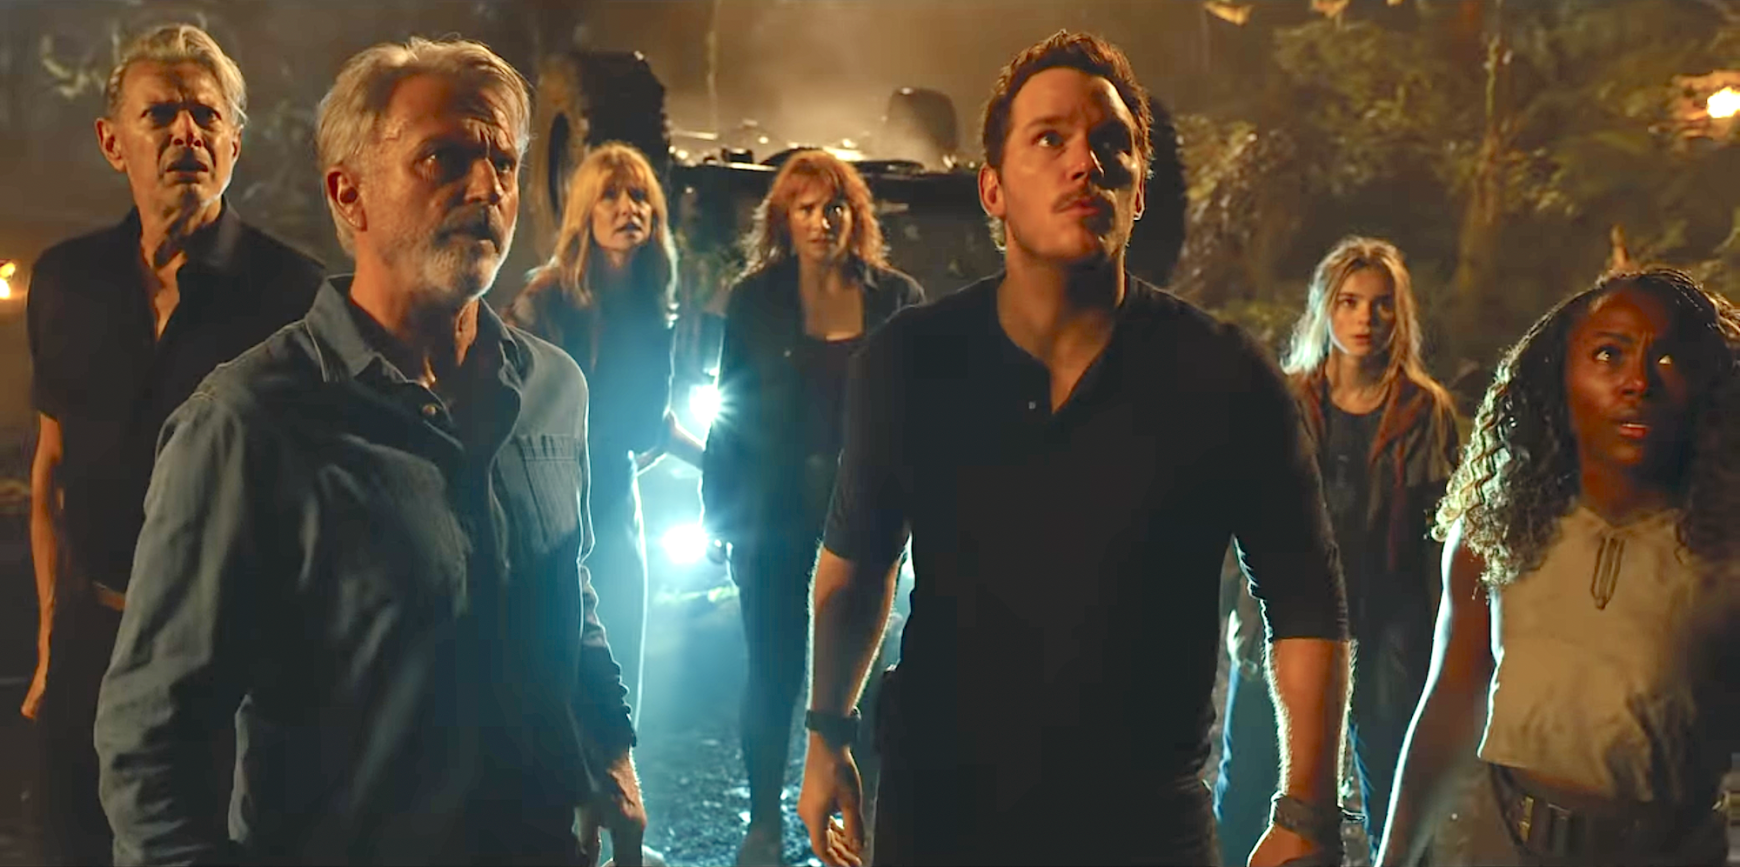 El nuevo trailer de "Jurassic World Dominion" viene con sorpresa: vuelven los protagonistas originales de Jurassic Park